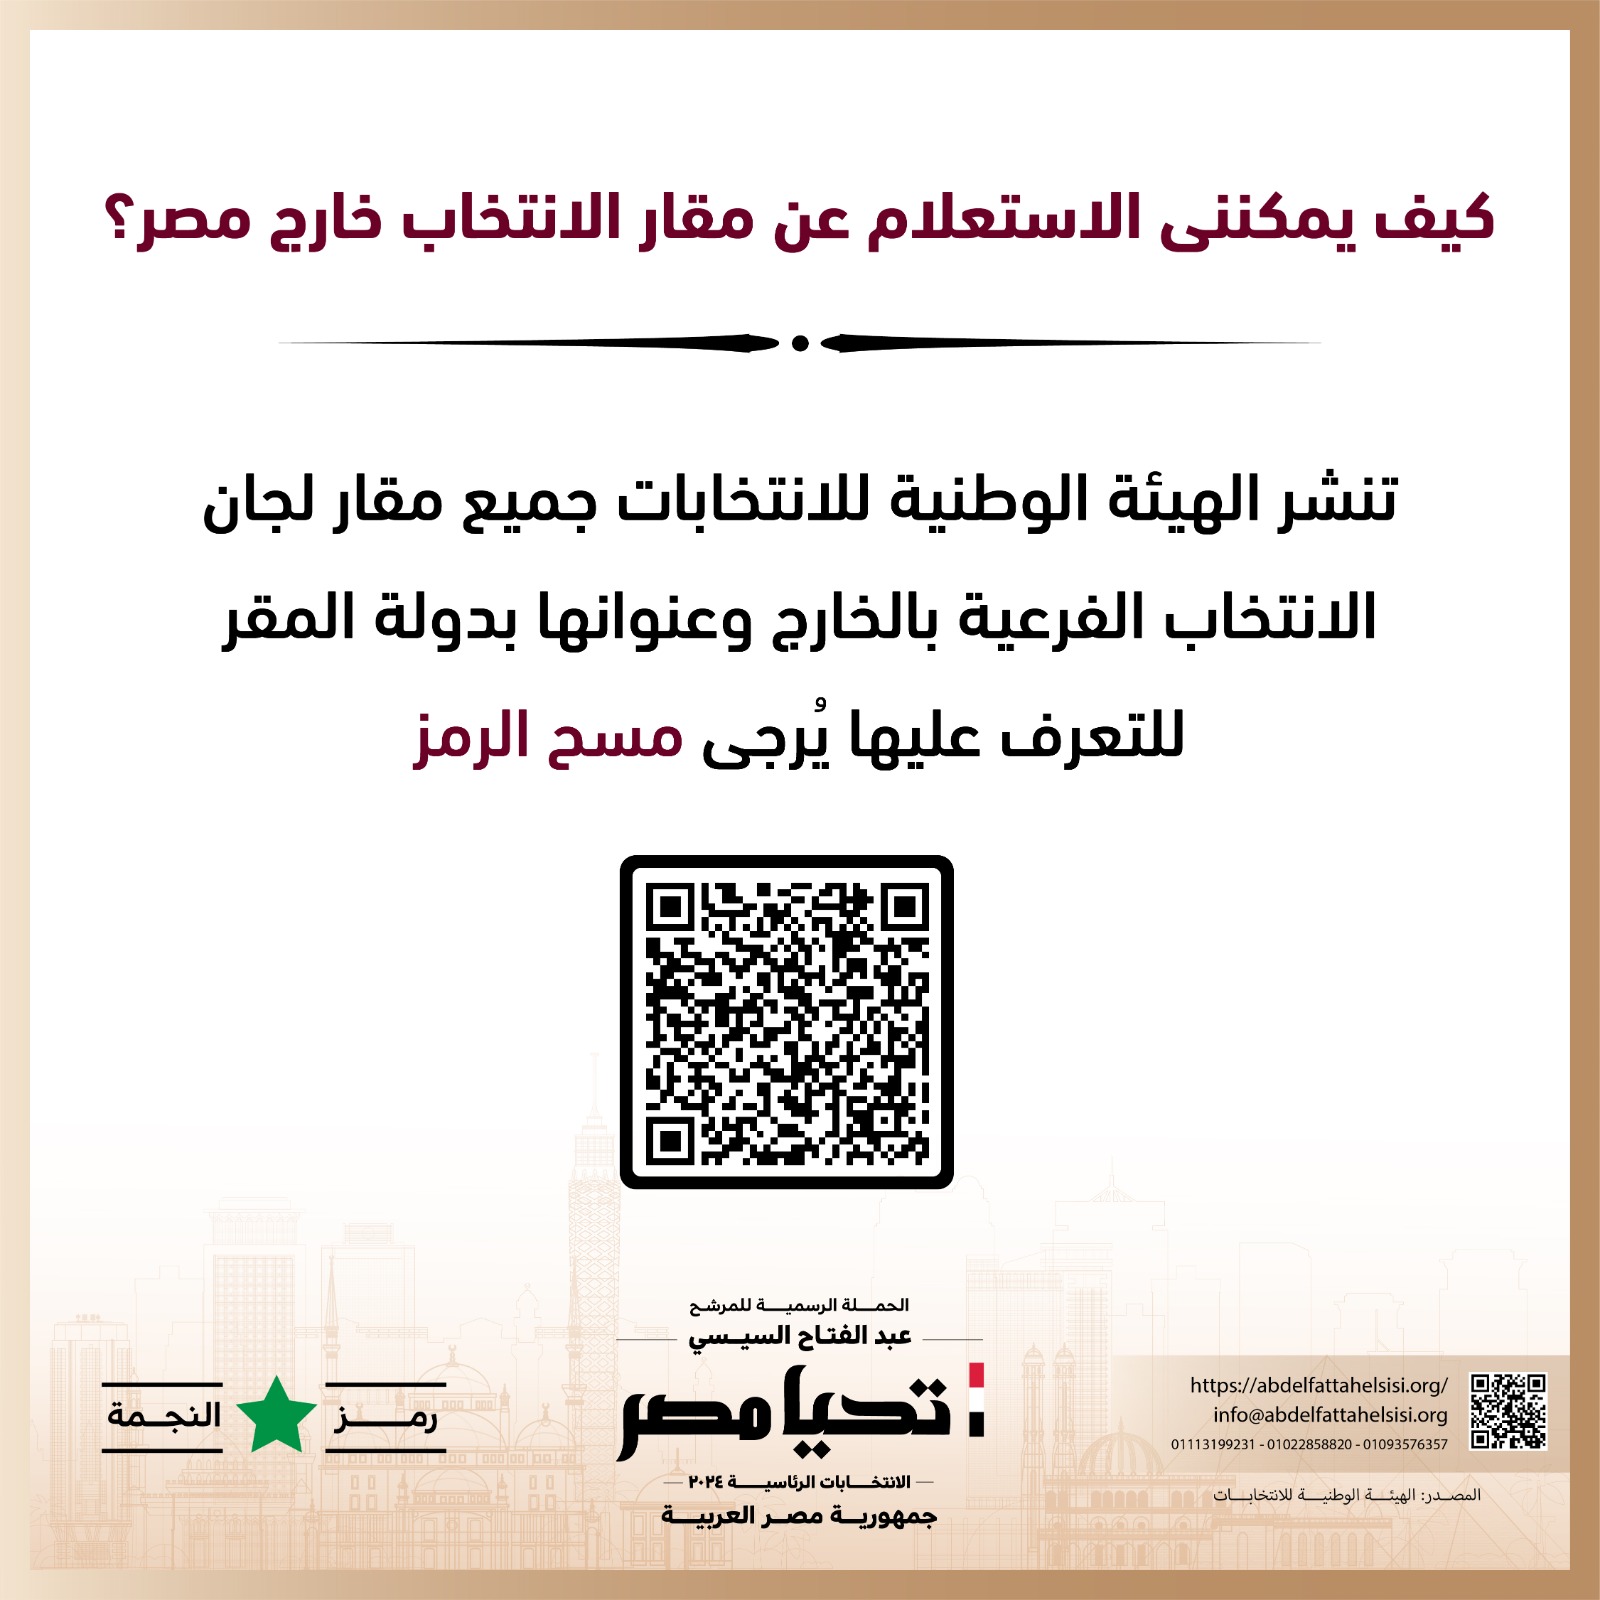 الحملة الرسمية للمرشح عبد الفتاح السيسي  (3)